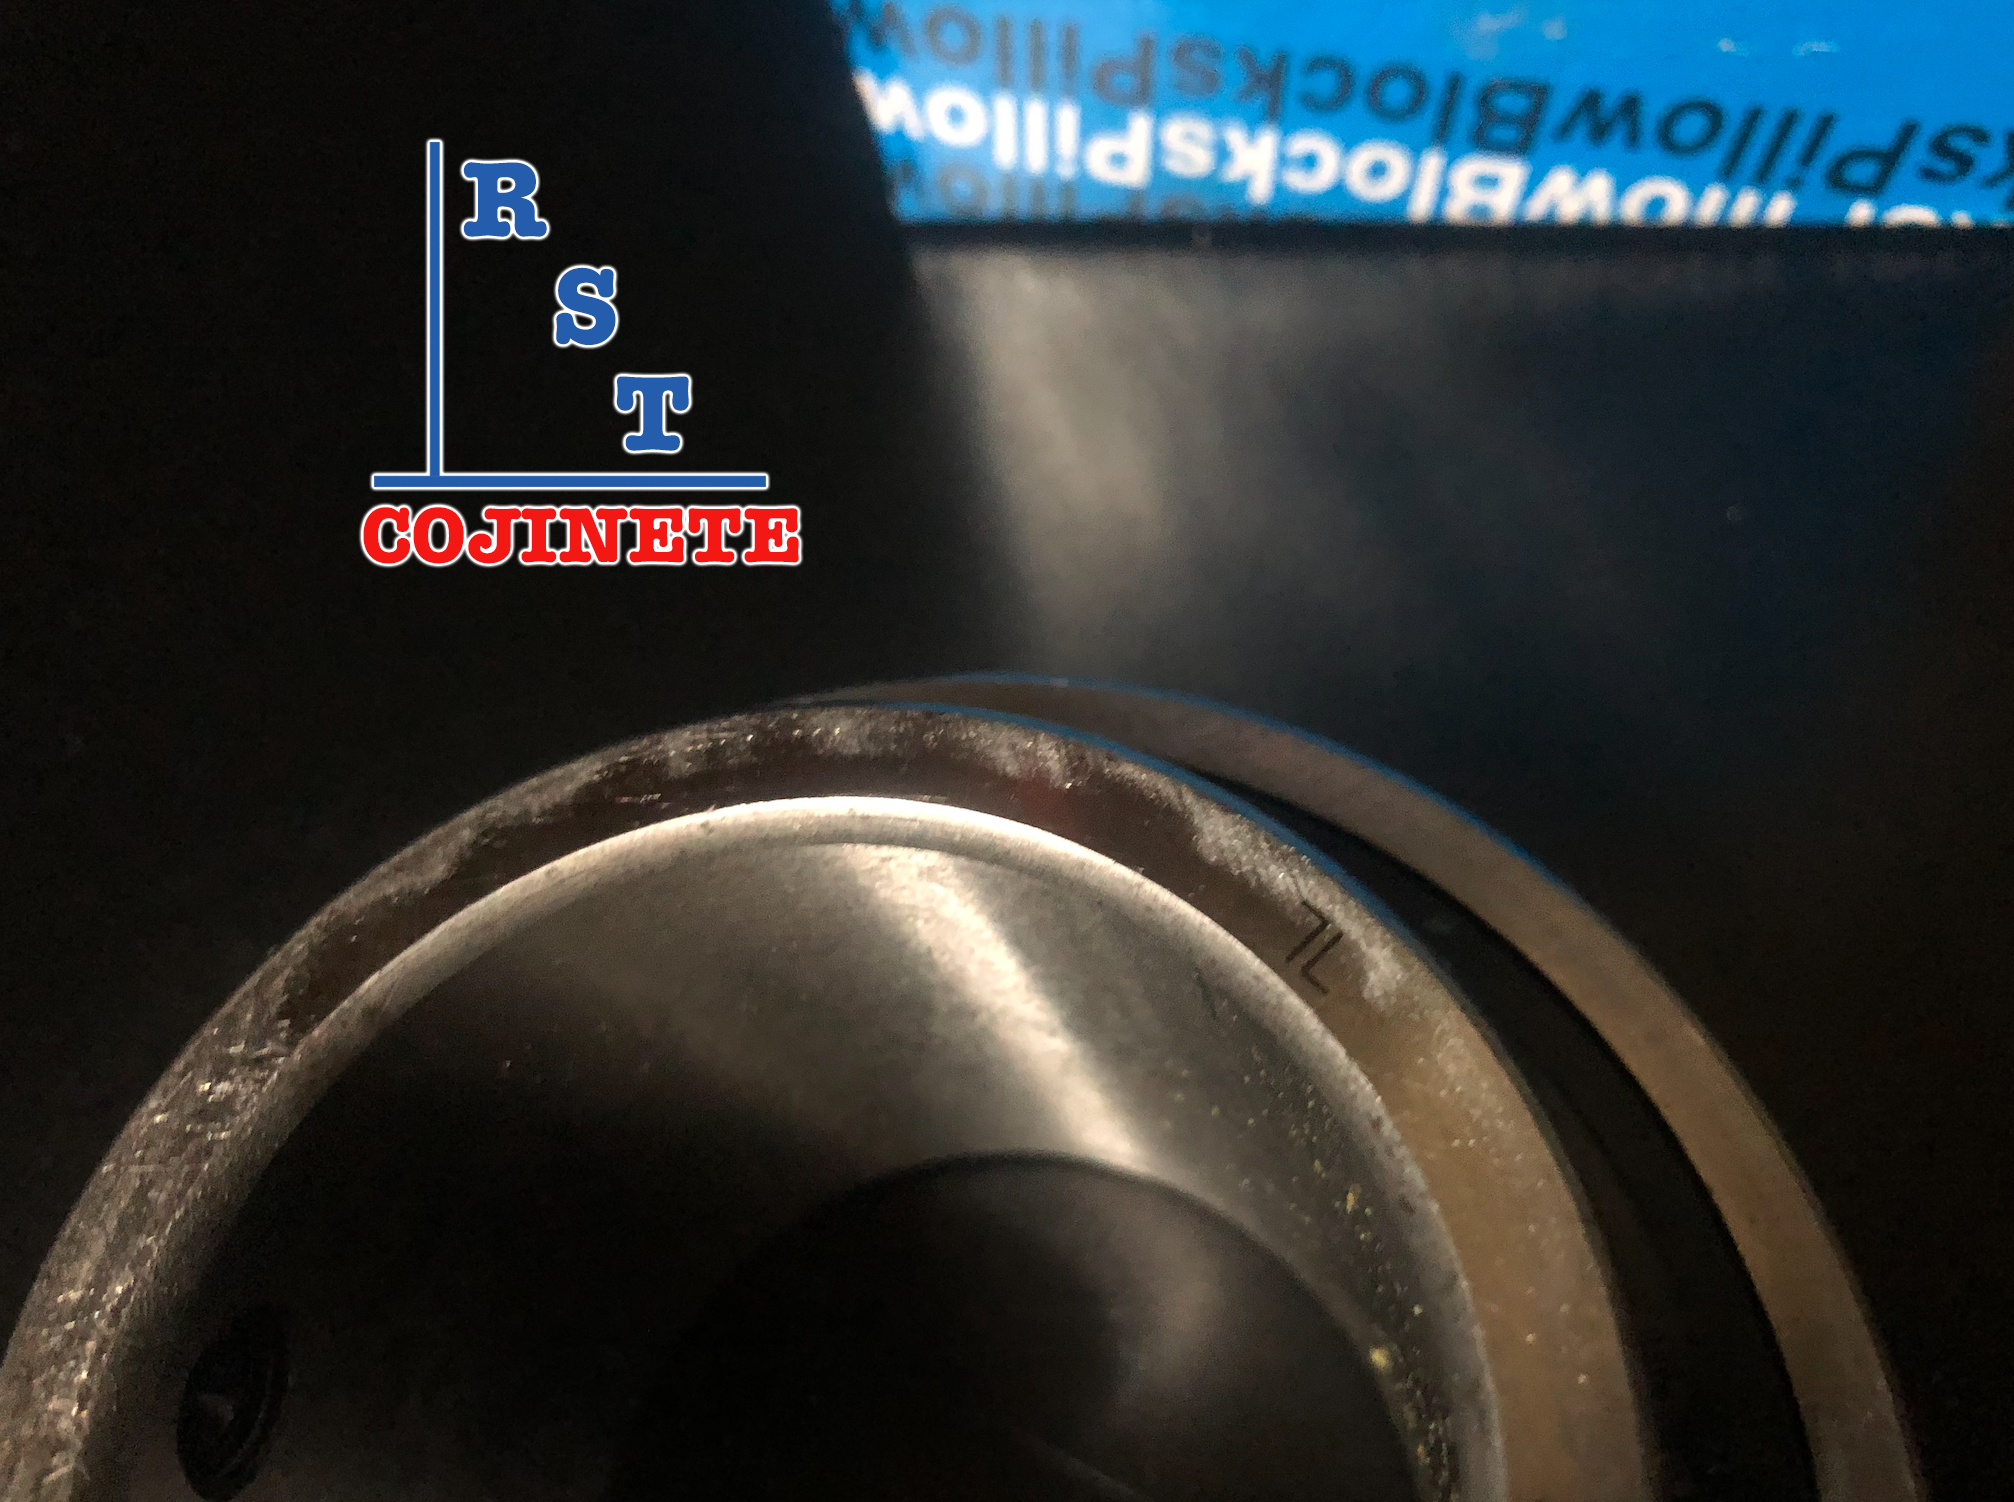 Cojinete insertable UC208-24 | Rodamiento para eje de 1-½" rígido de bolas con sello de hule para chumacera